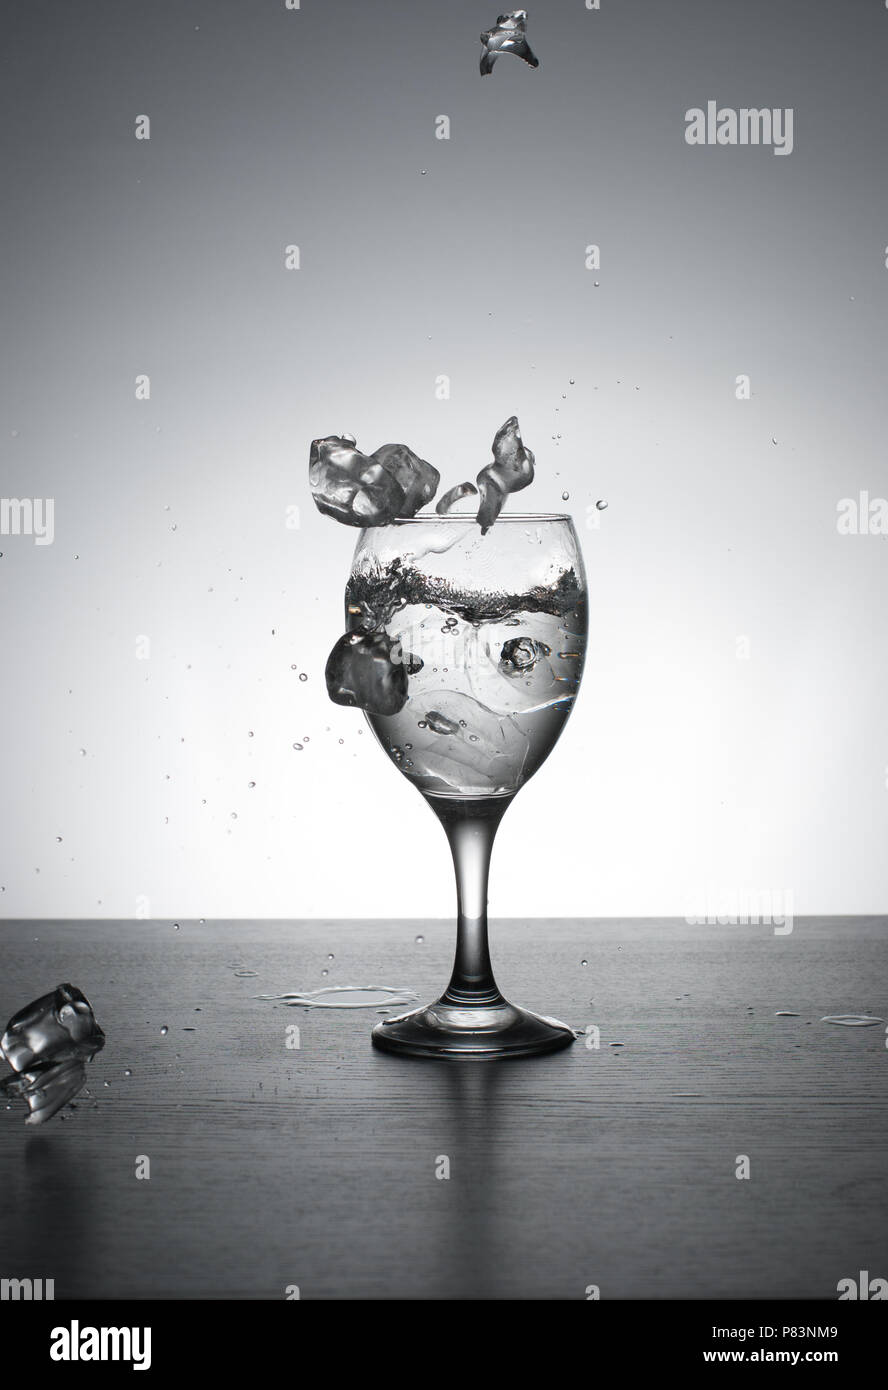 L'eau est versée dans le verre de vin, rétroéclairé sur fond blanc avec des touches.Vitesse d'obturation. Motion gelée. Banque D'Images